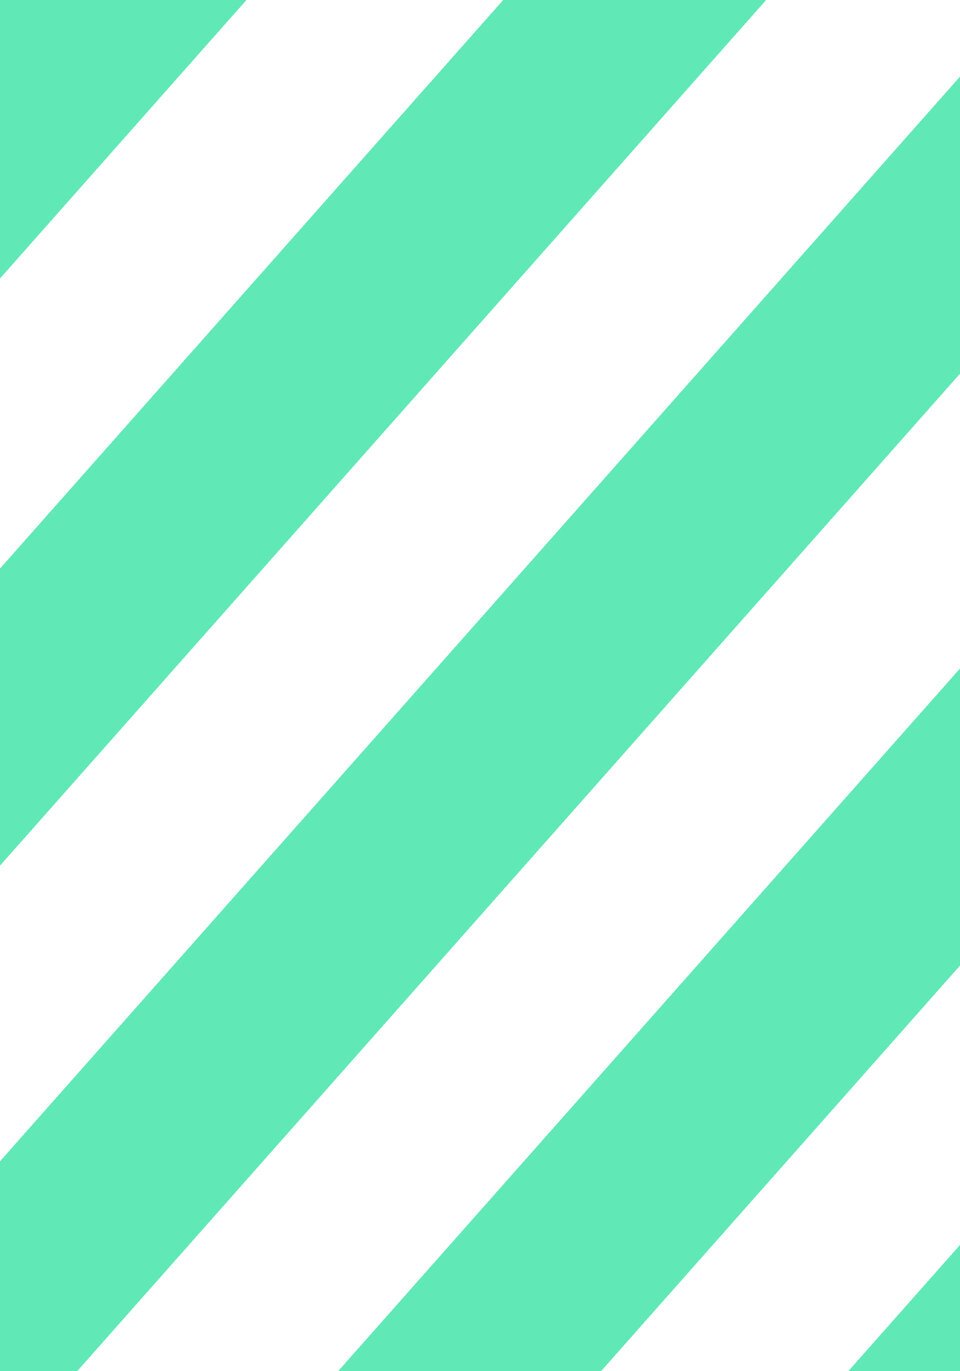 grün-weiße Streifen